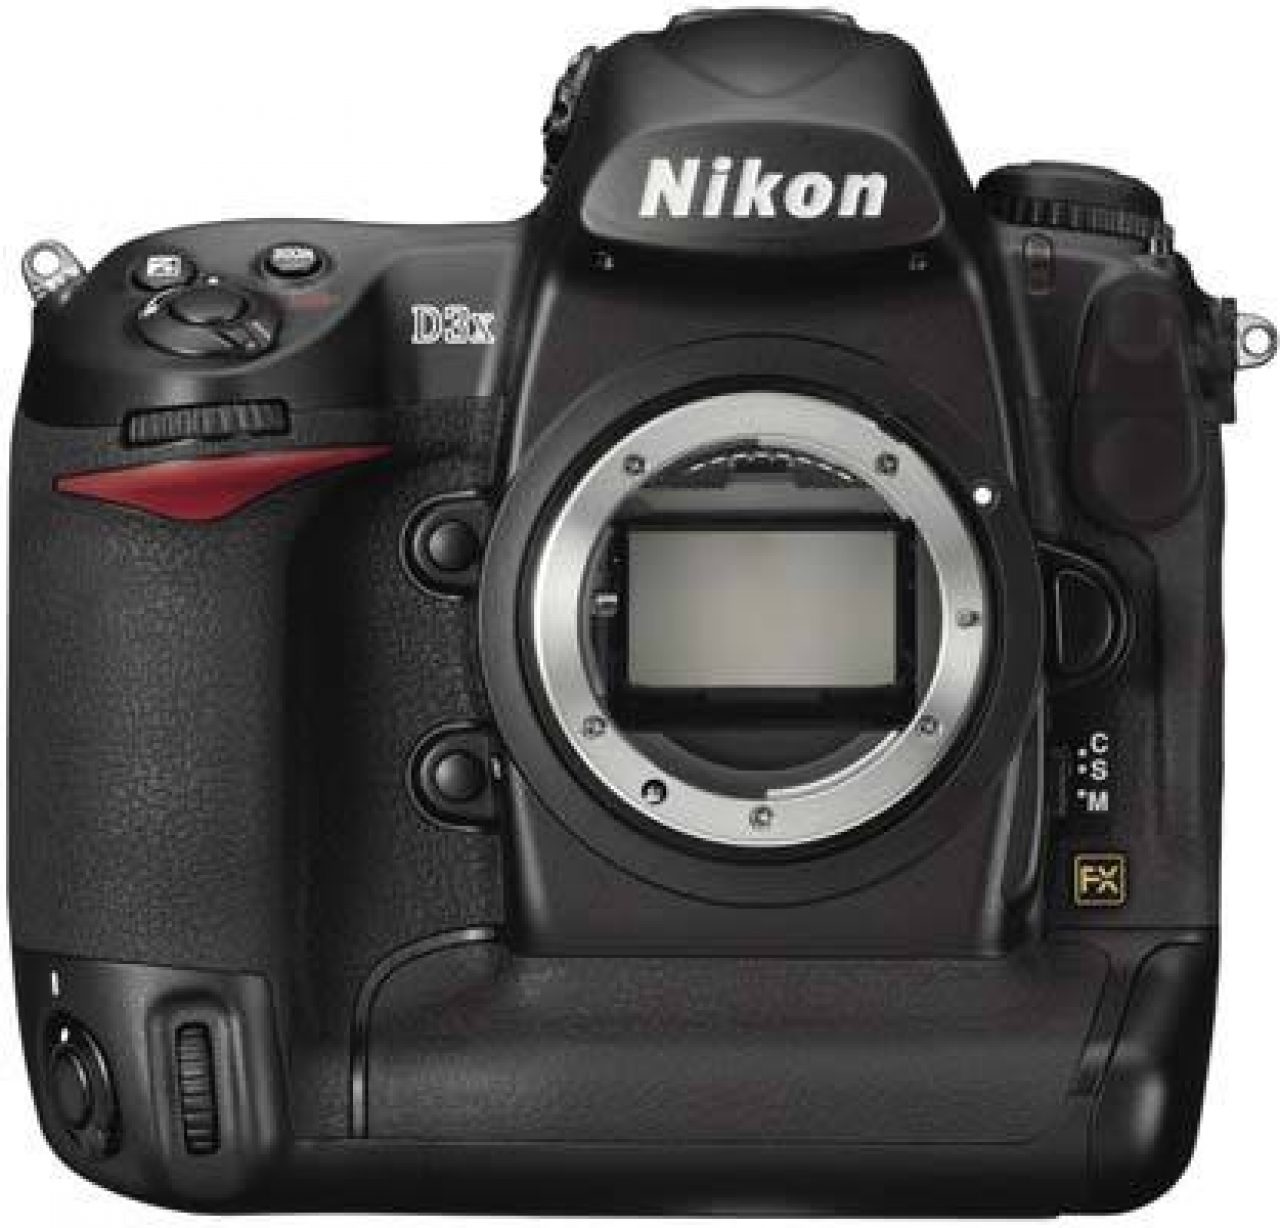 Bottom Rubber For Nikon D7000 Camera Terminal Cover Cap Lid Repair Replacement Q 